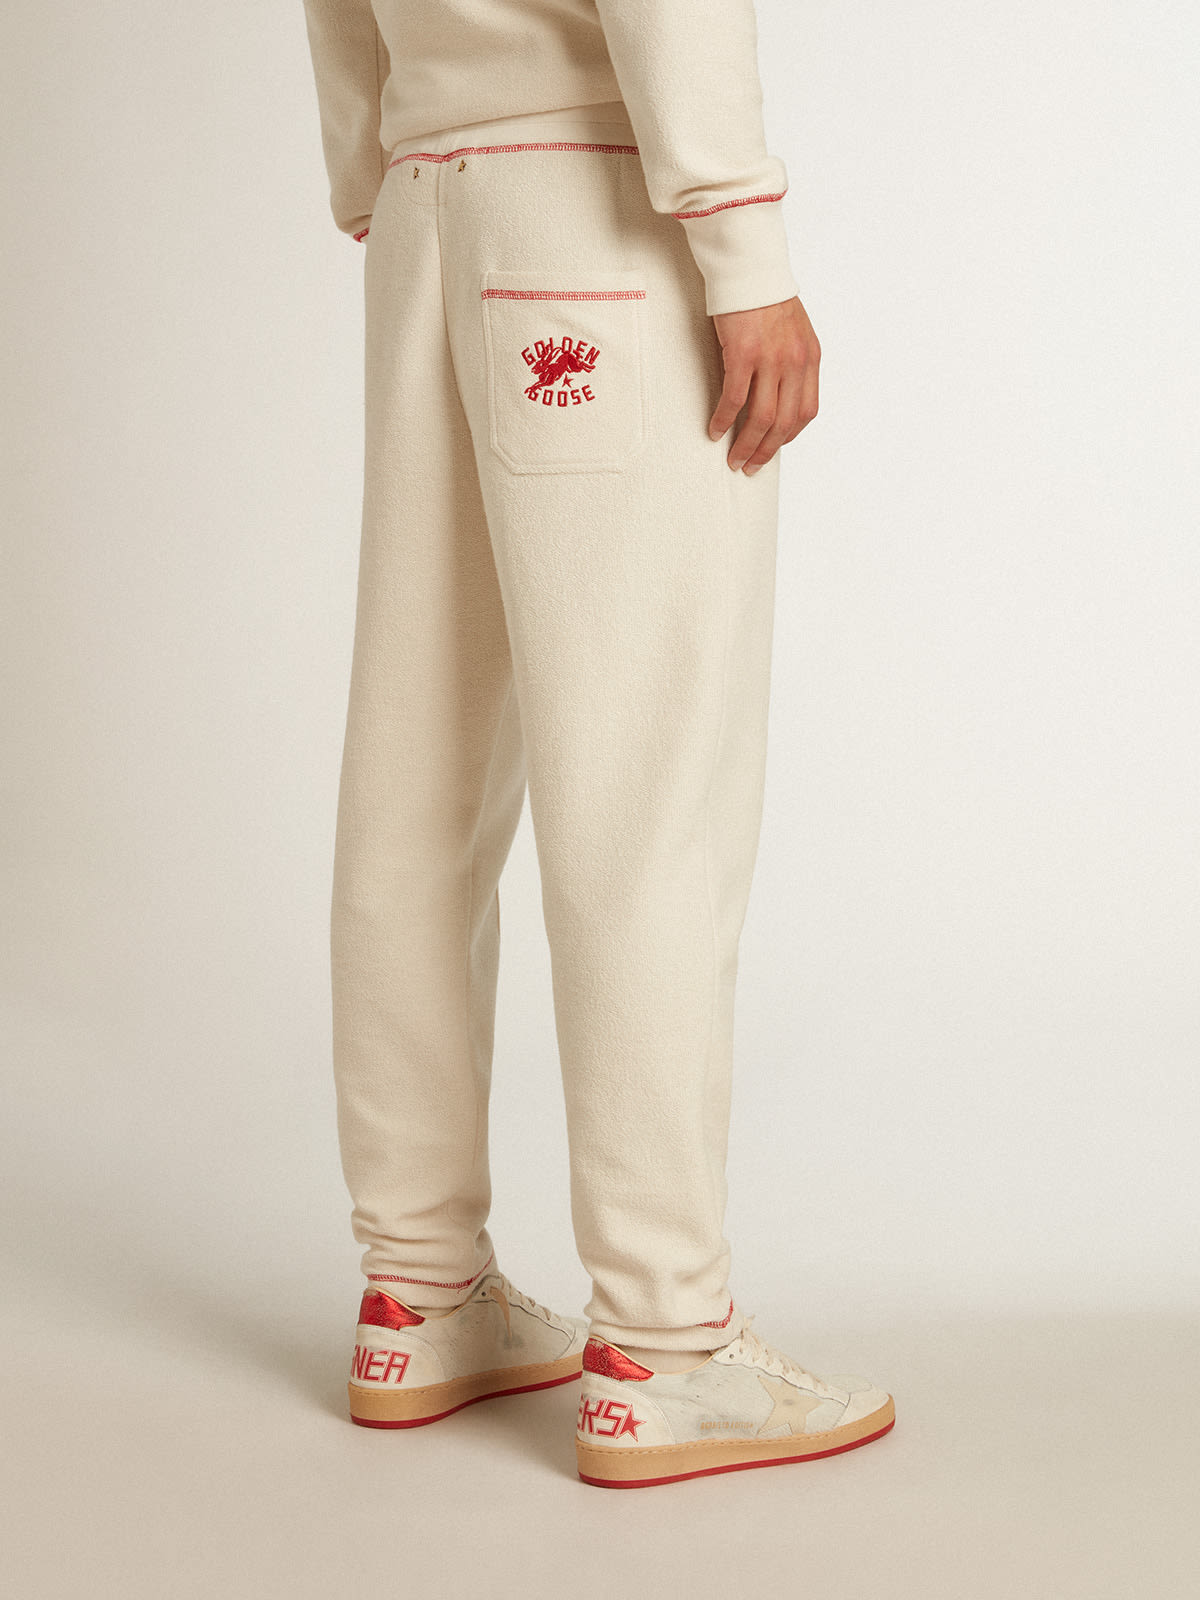 Golden Goose - Pantalone jogging Uomo color bianco heritage con logo CNY in 